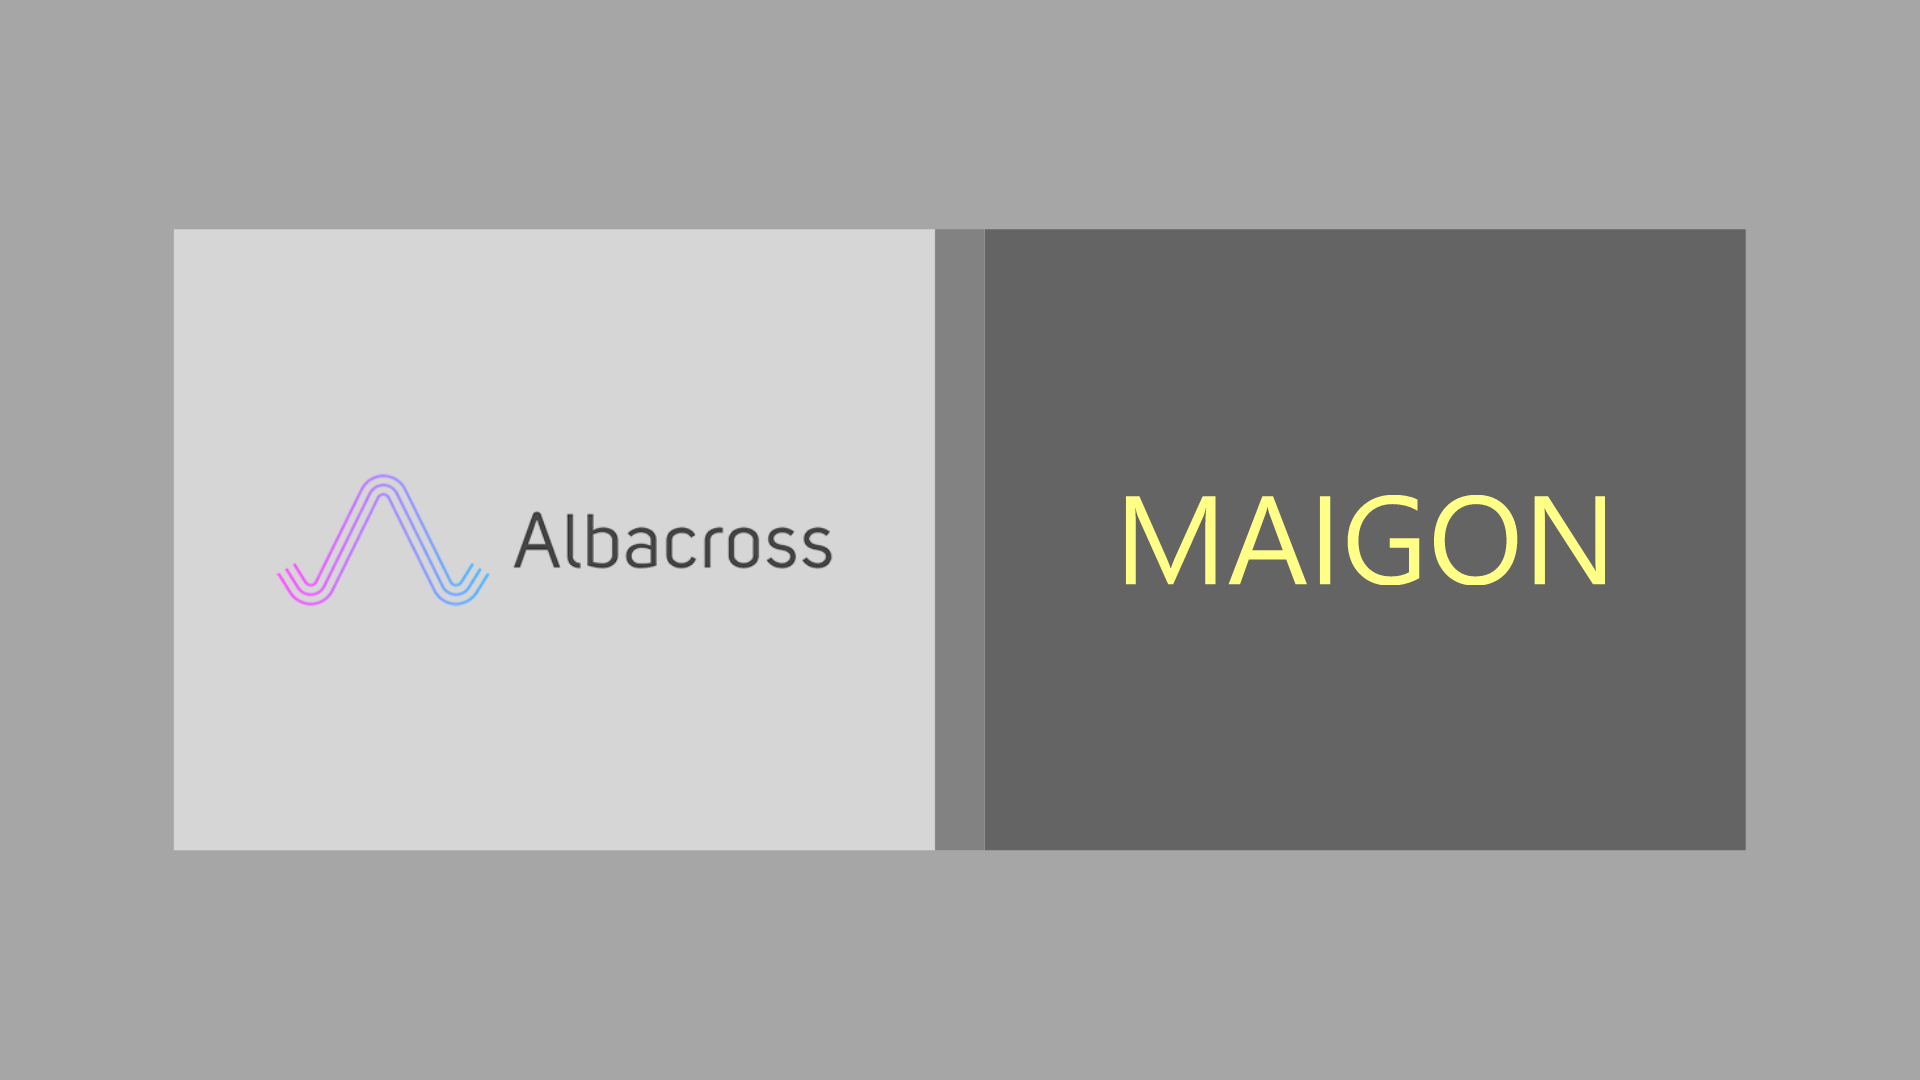 Albacross, a Revenue Acceleration Platform, Signs Up for Maigon Services